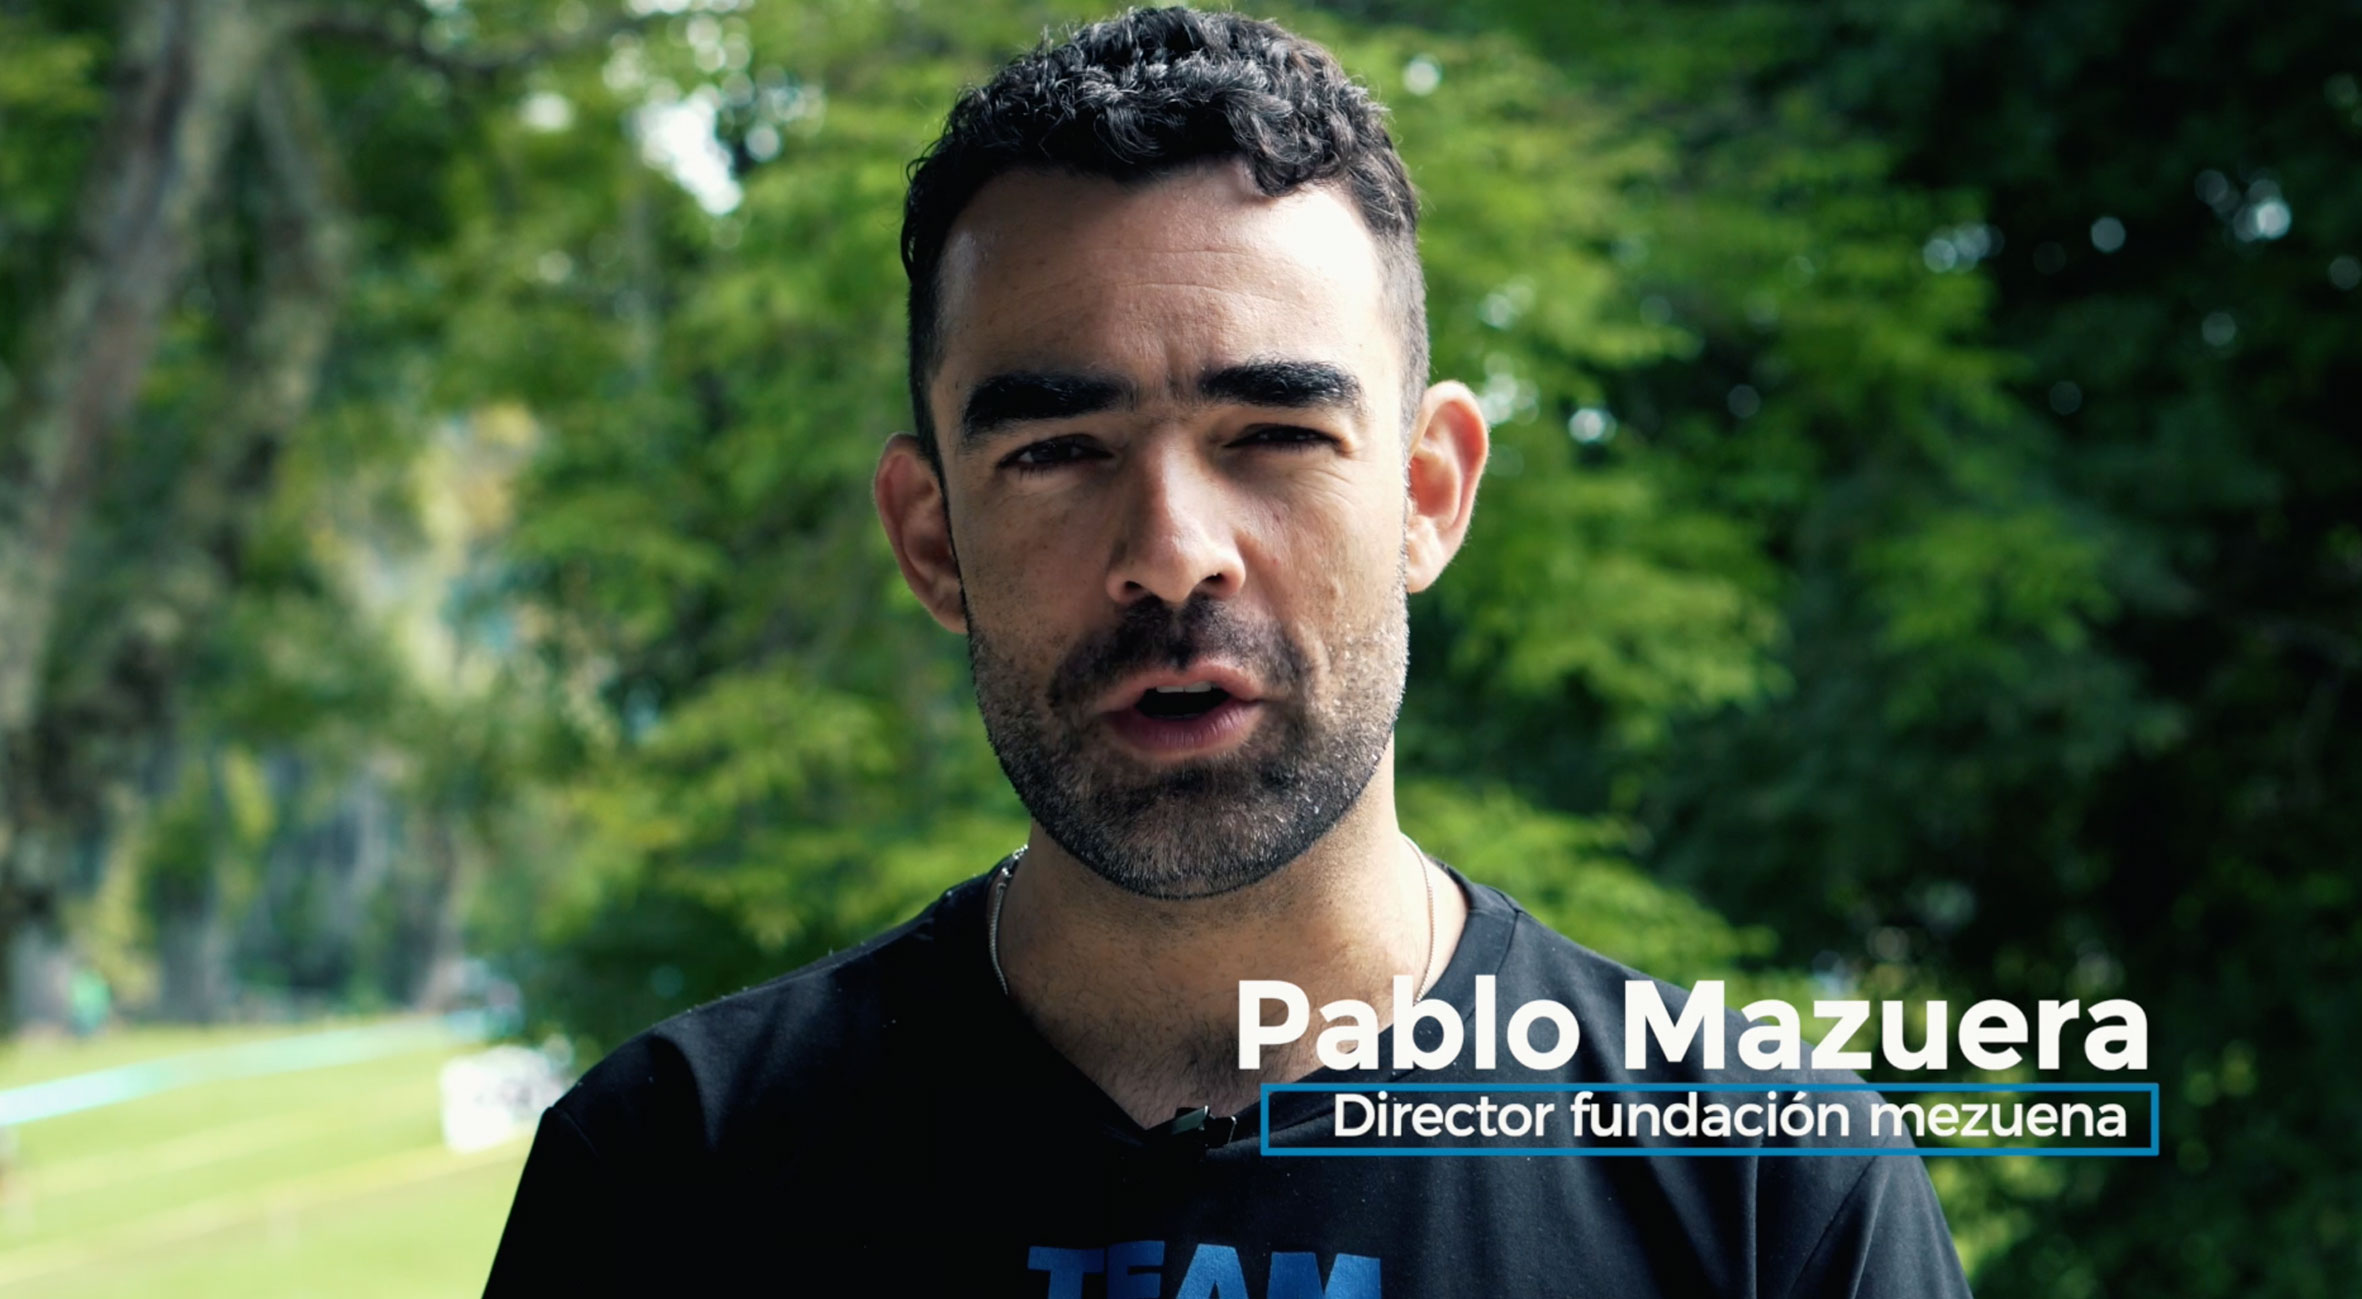 VIDEO FUNDACIÓN MEZUENA: Inspirando a la juventud por medio del deporte  